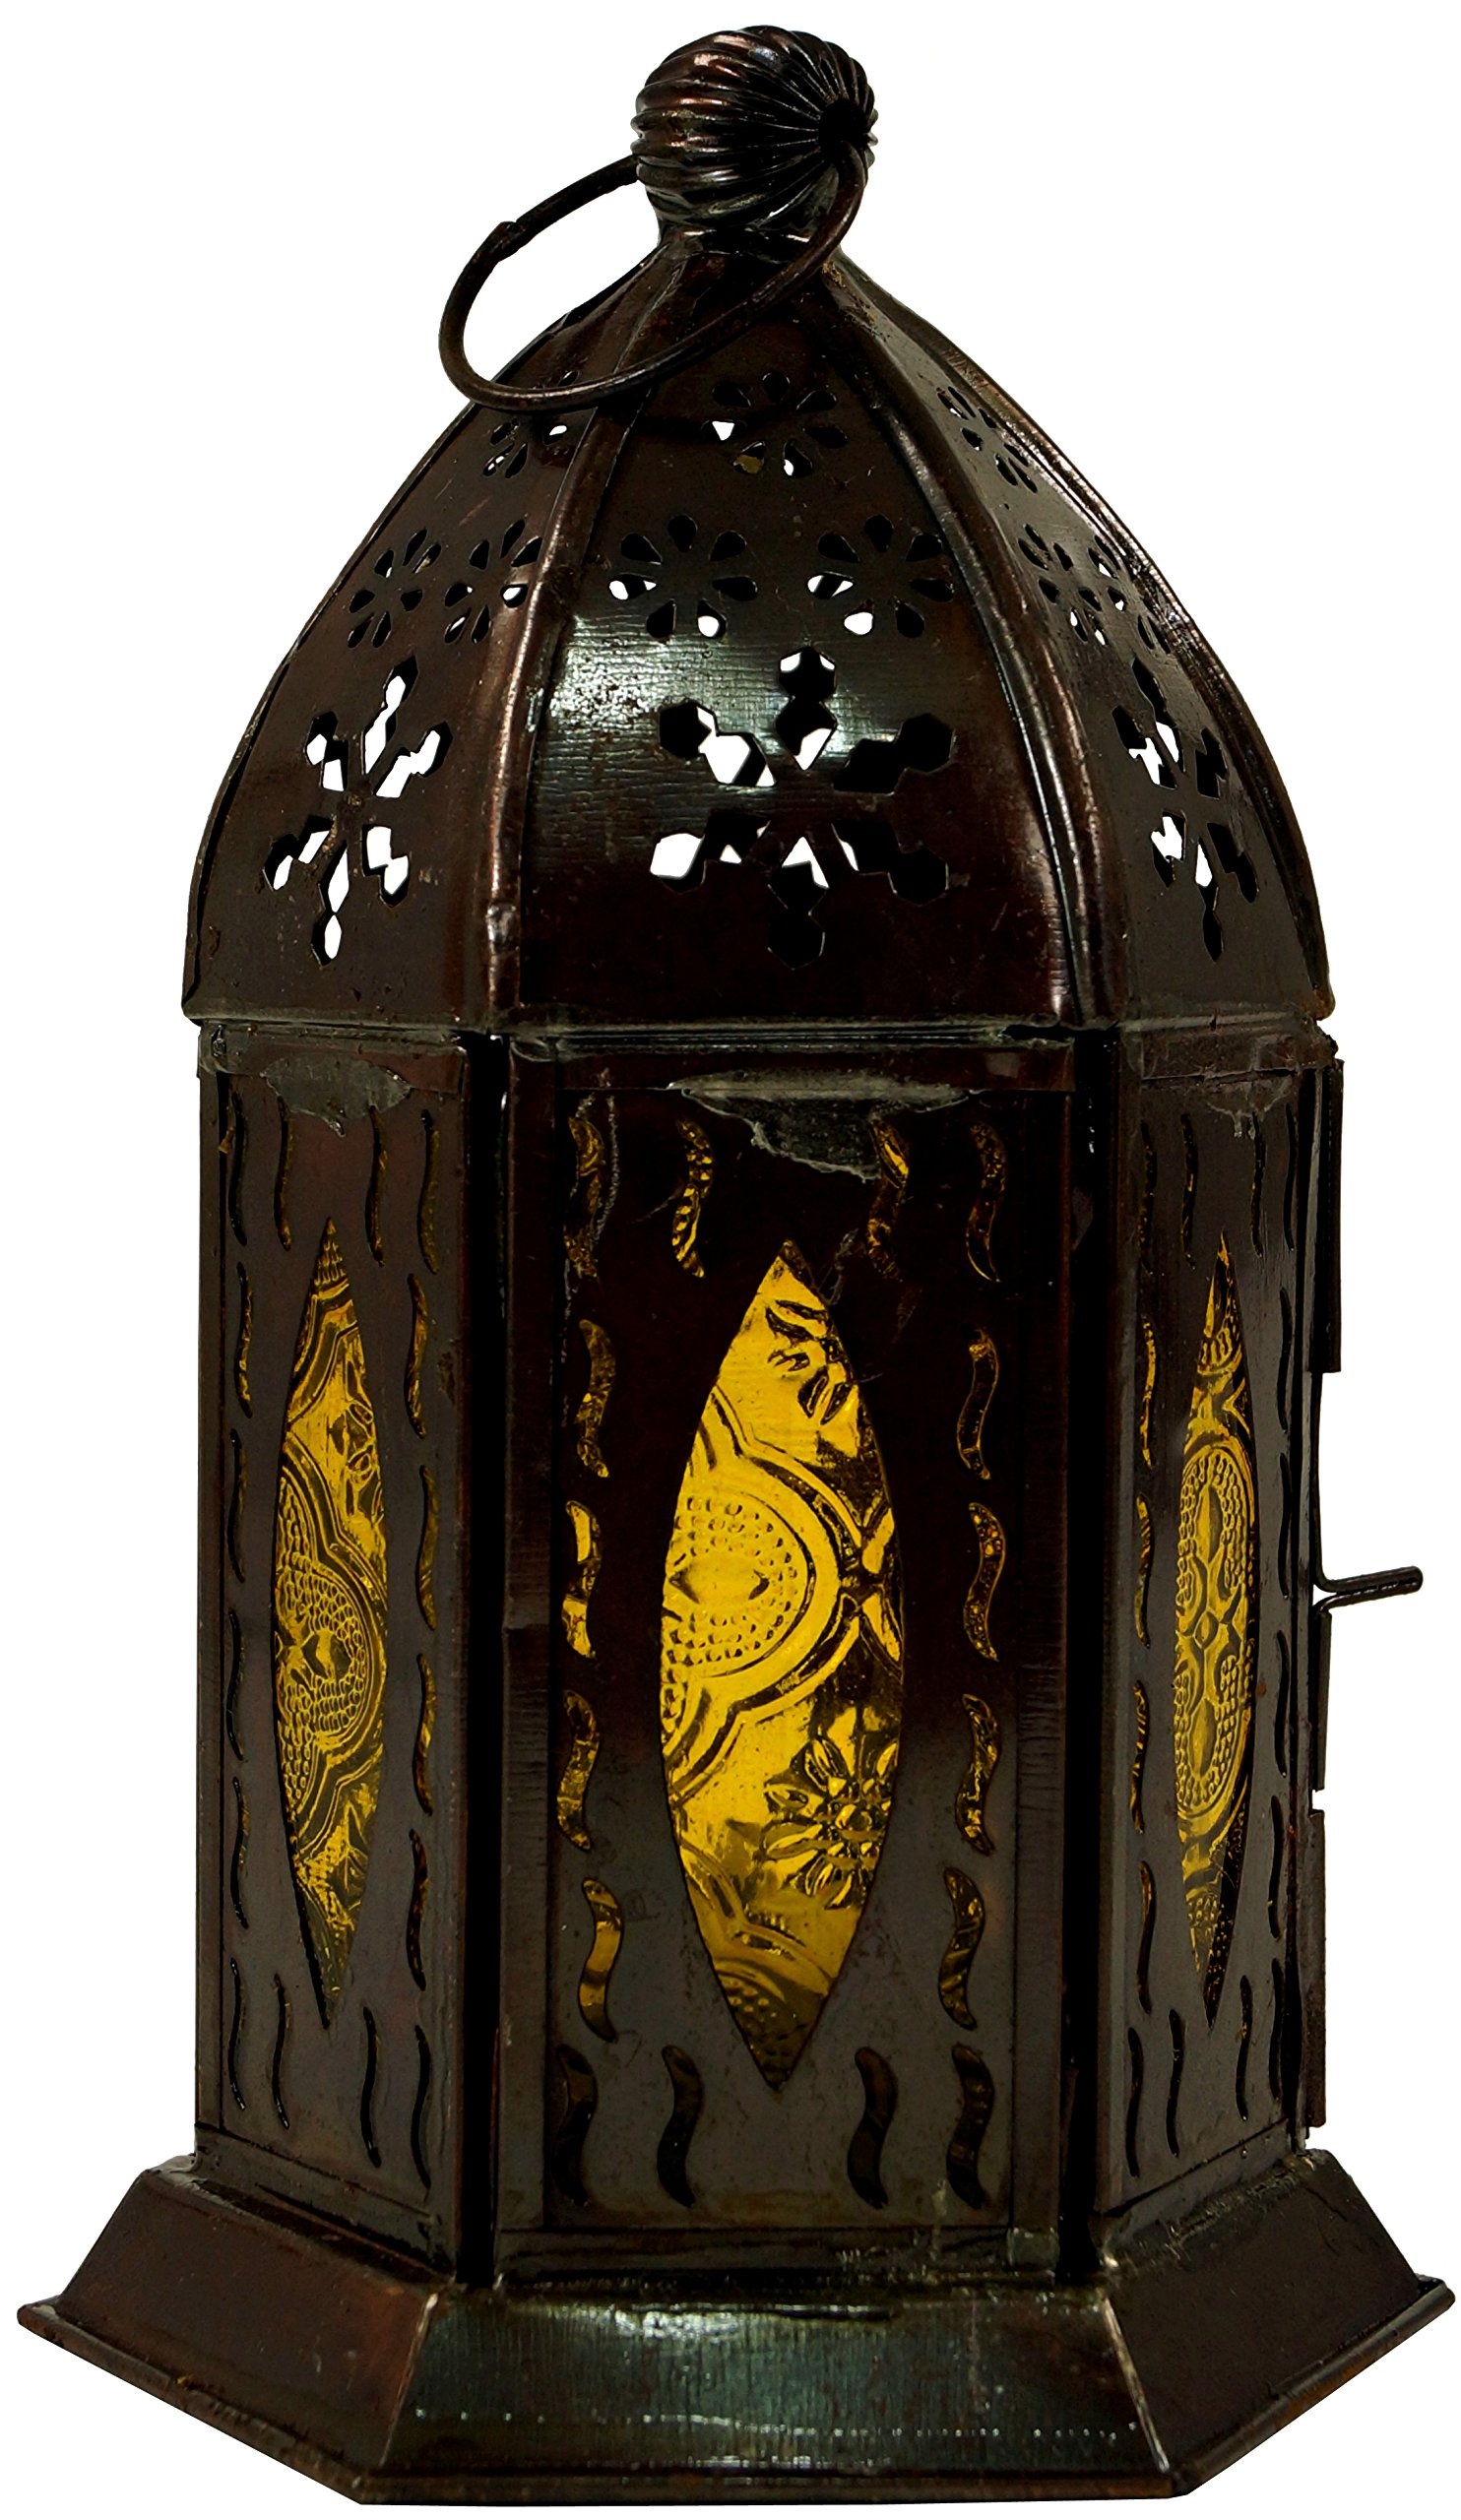 GURU SHOP Orientalische Metall/Glas Laterne in Marrokanischem Design, Windlicht ., Gelb, Farbe: Gelb, 18x10x10 cm, Orientalische Laternen